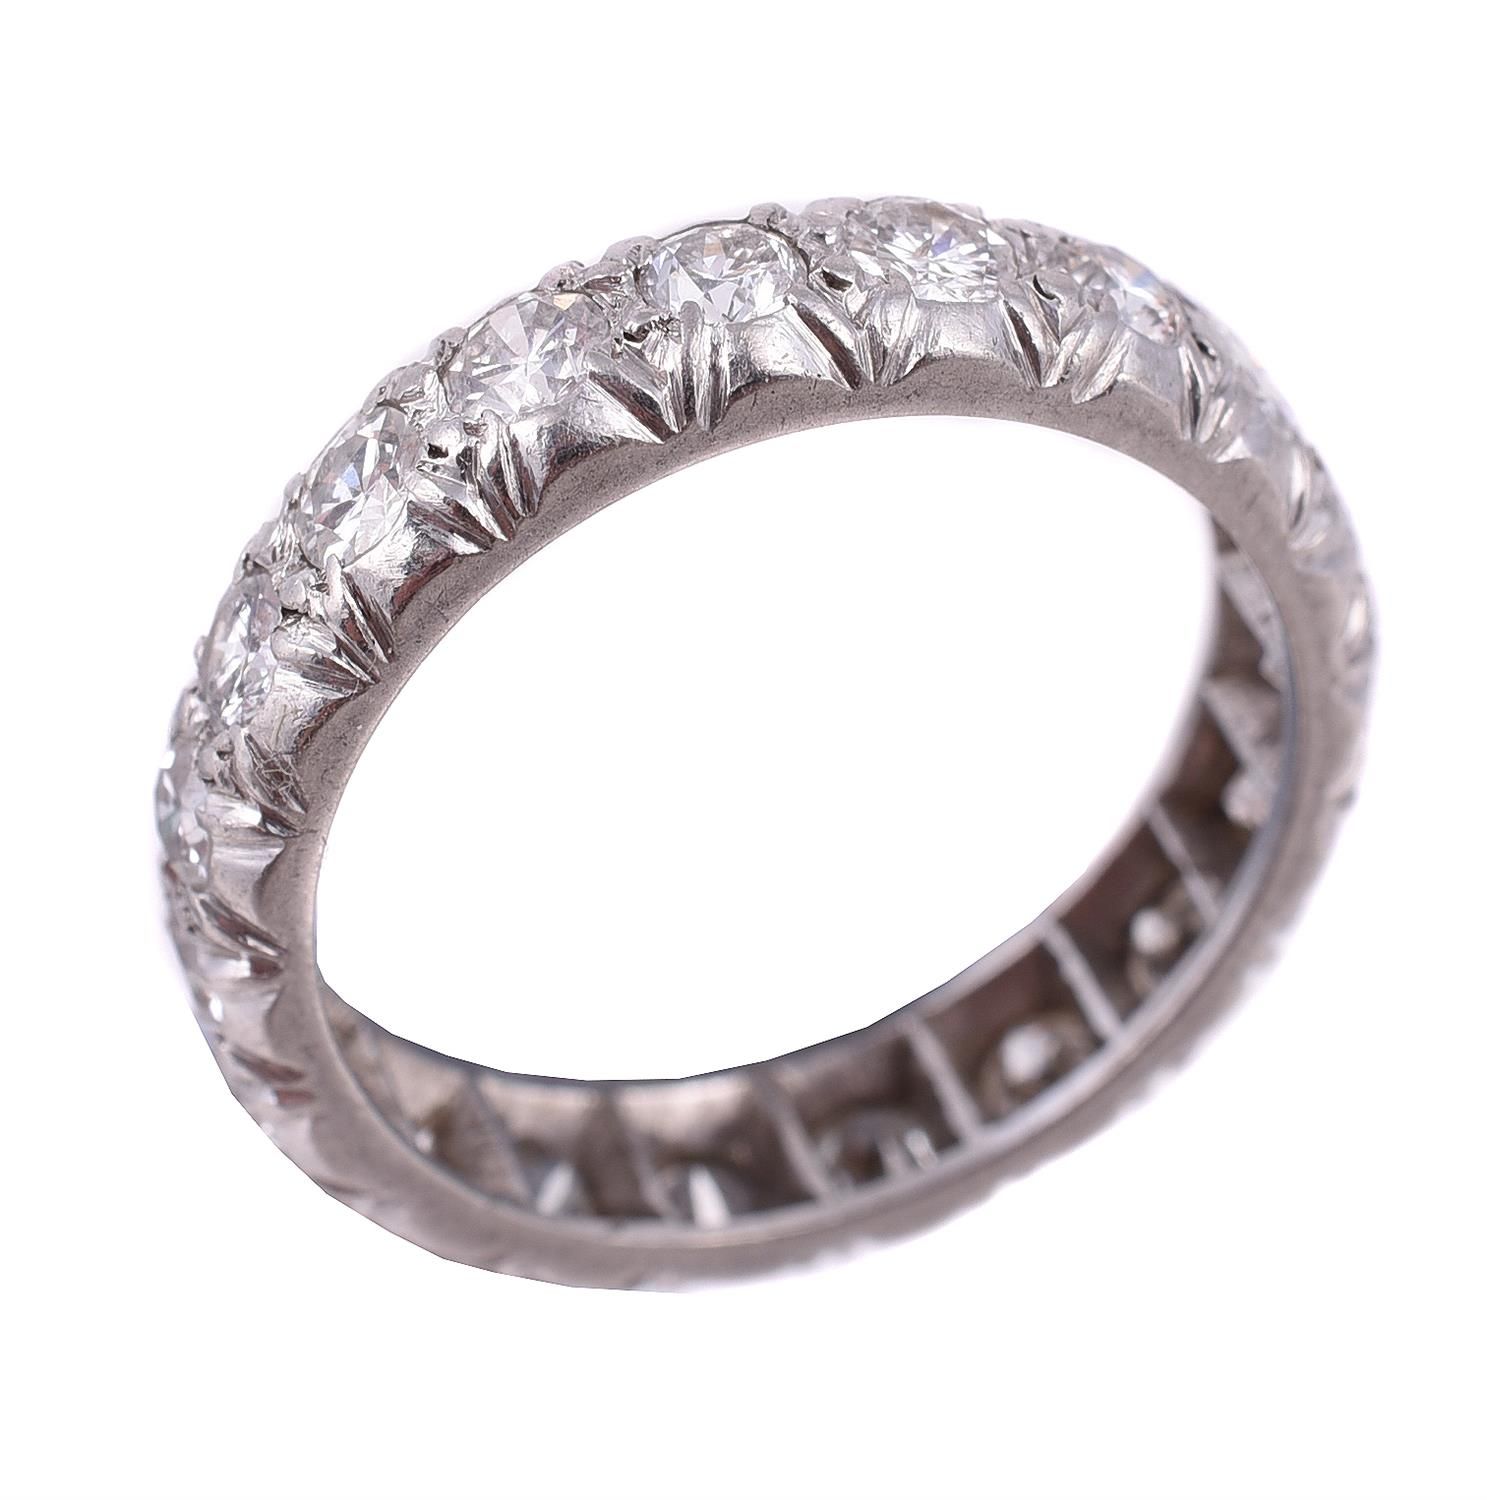 A diamond eternity ring 一枚永恒的钻石戒指，明亮式切割的钻石在夹层中镶嵌，共约1.71克拉，手指尺寸为N，总重5.4克。